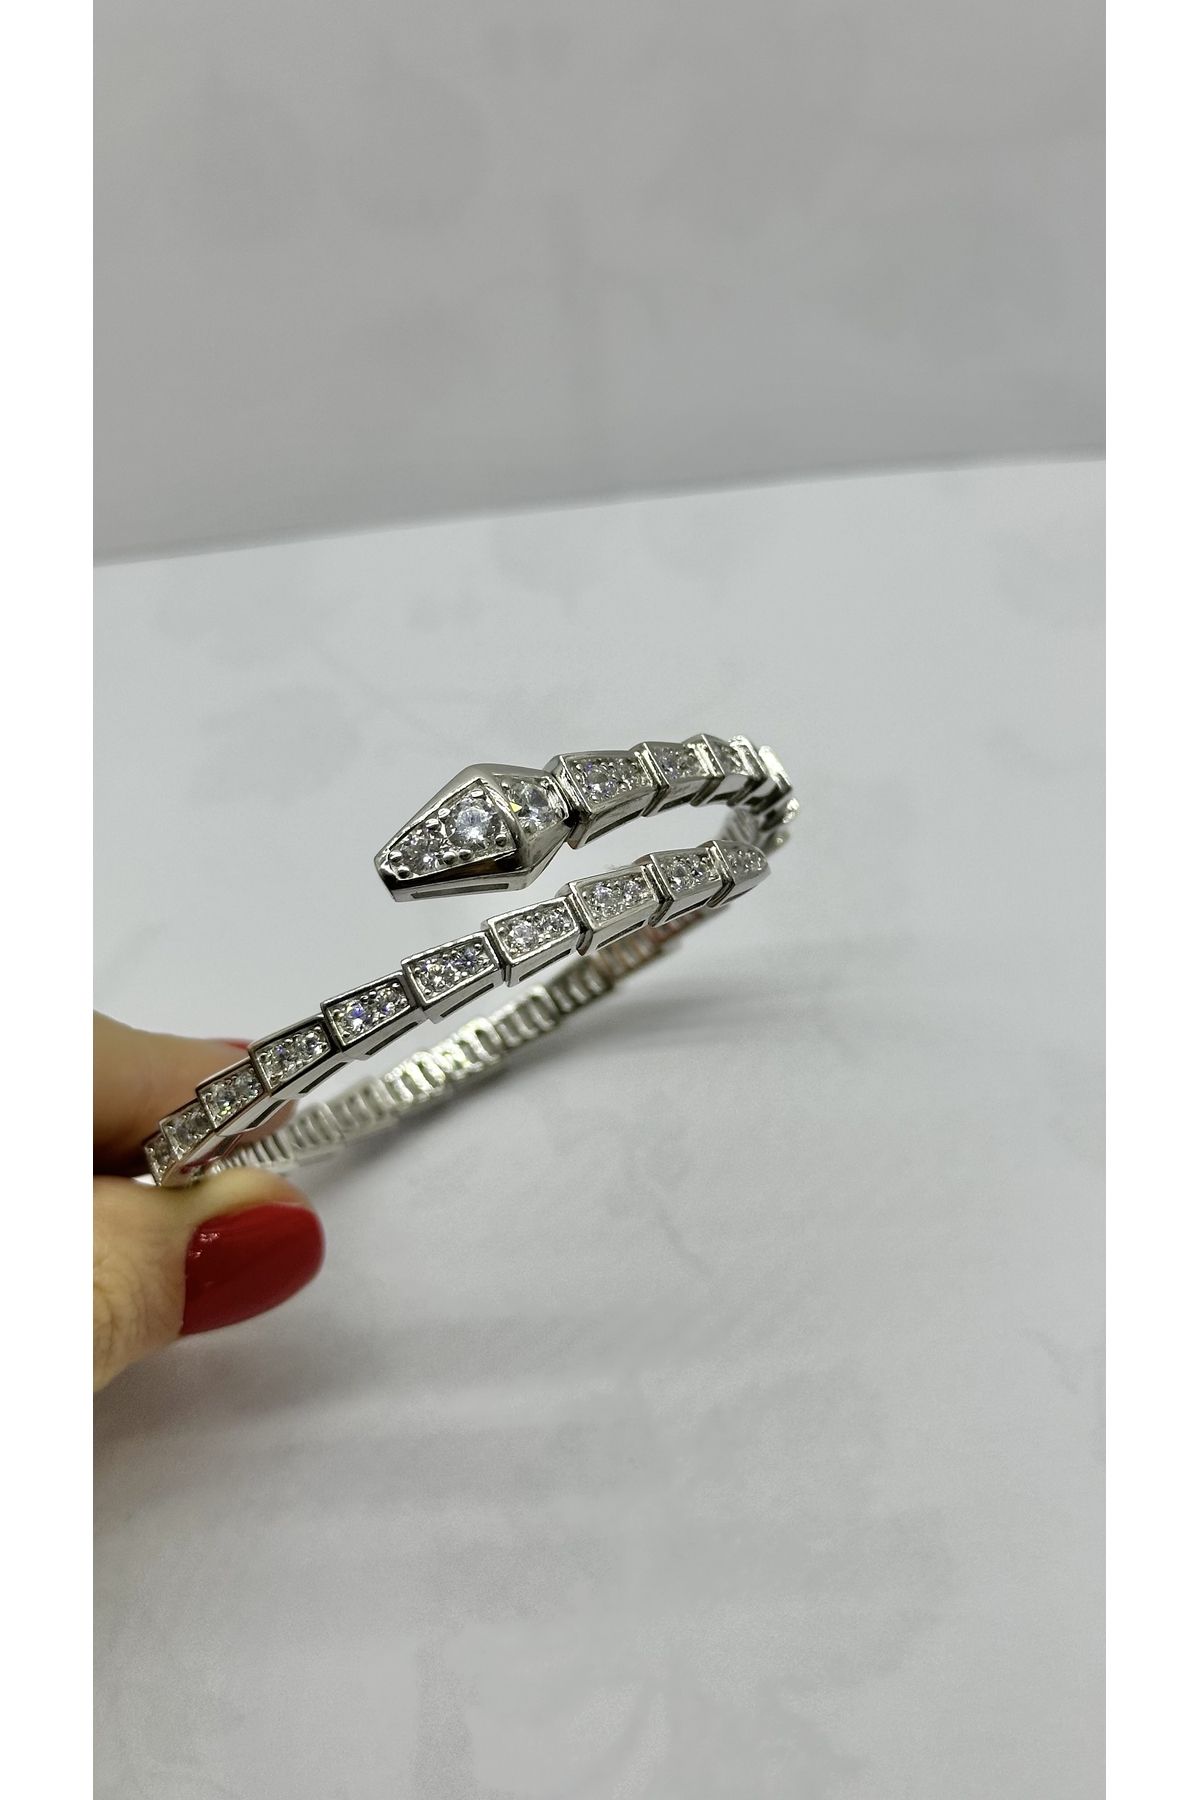 Selen’S Gümüş Kadın ViP Blgri Yılan Kelepçe Gümüş Bileklik Beyaz Altın Kaplama Yılan Exlucive Kelepçe Özel Üretim